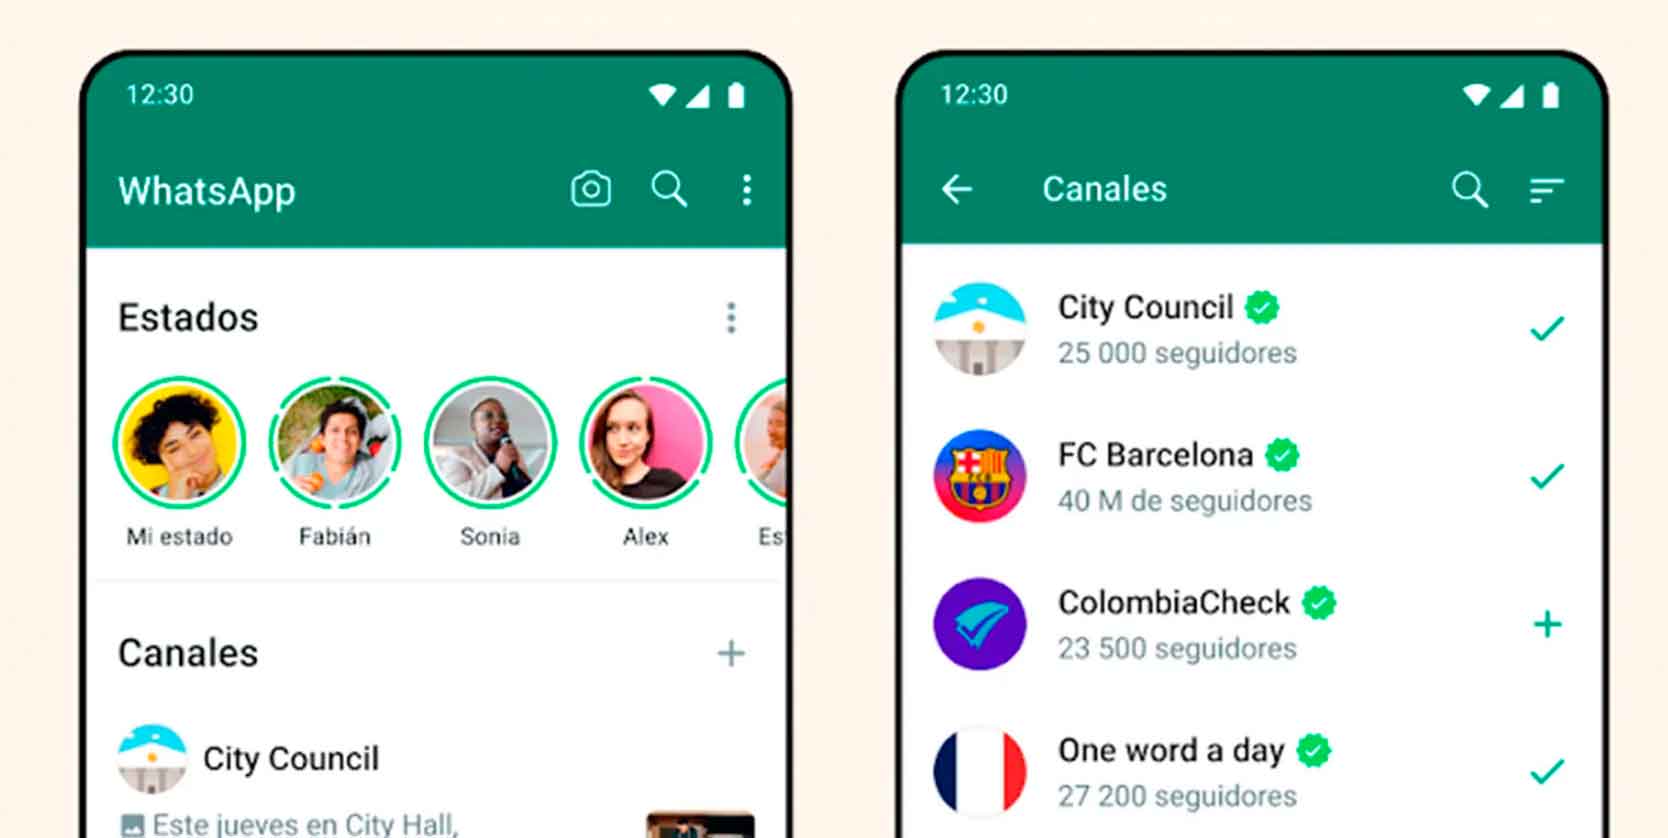 Canales De Whatsapp Conoce Todo Sobre Esta Función De La Famosa App De Mensajería Diario 5801